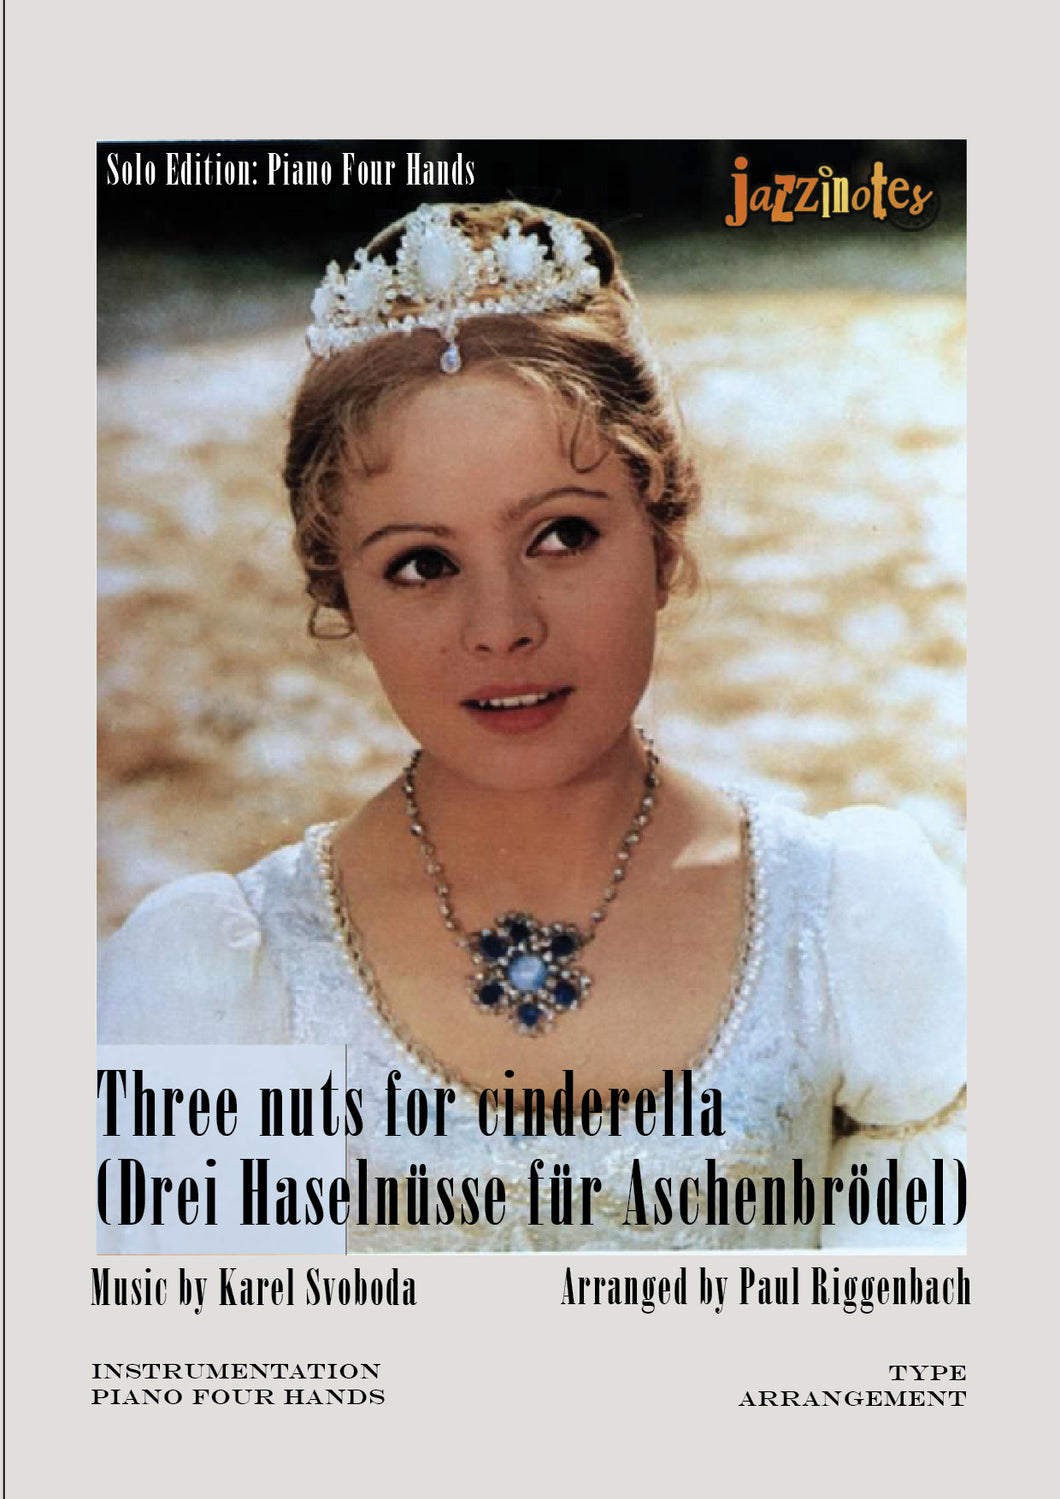 Svoboda, Karel: Drei Haselnüsse für Aschenbrödel - Musiknoten Download